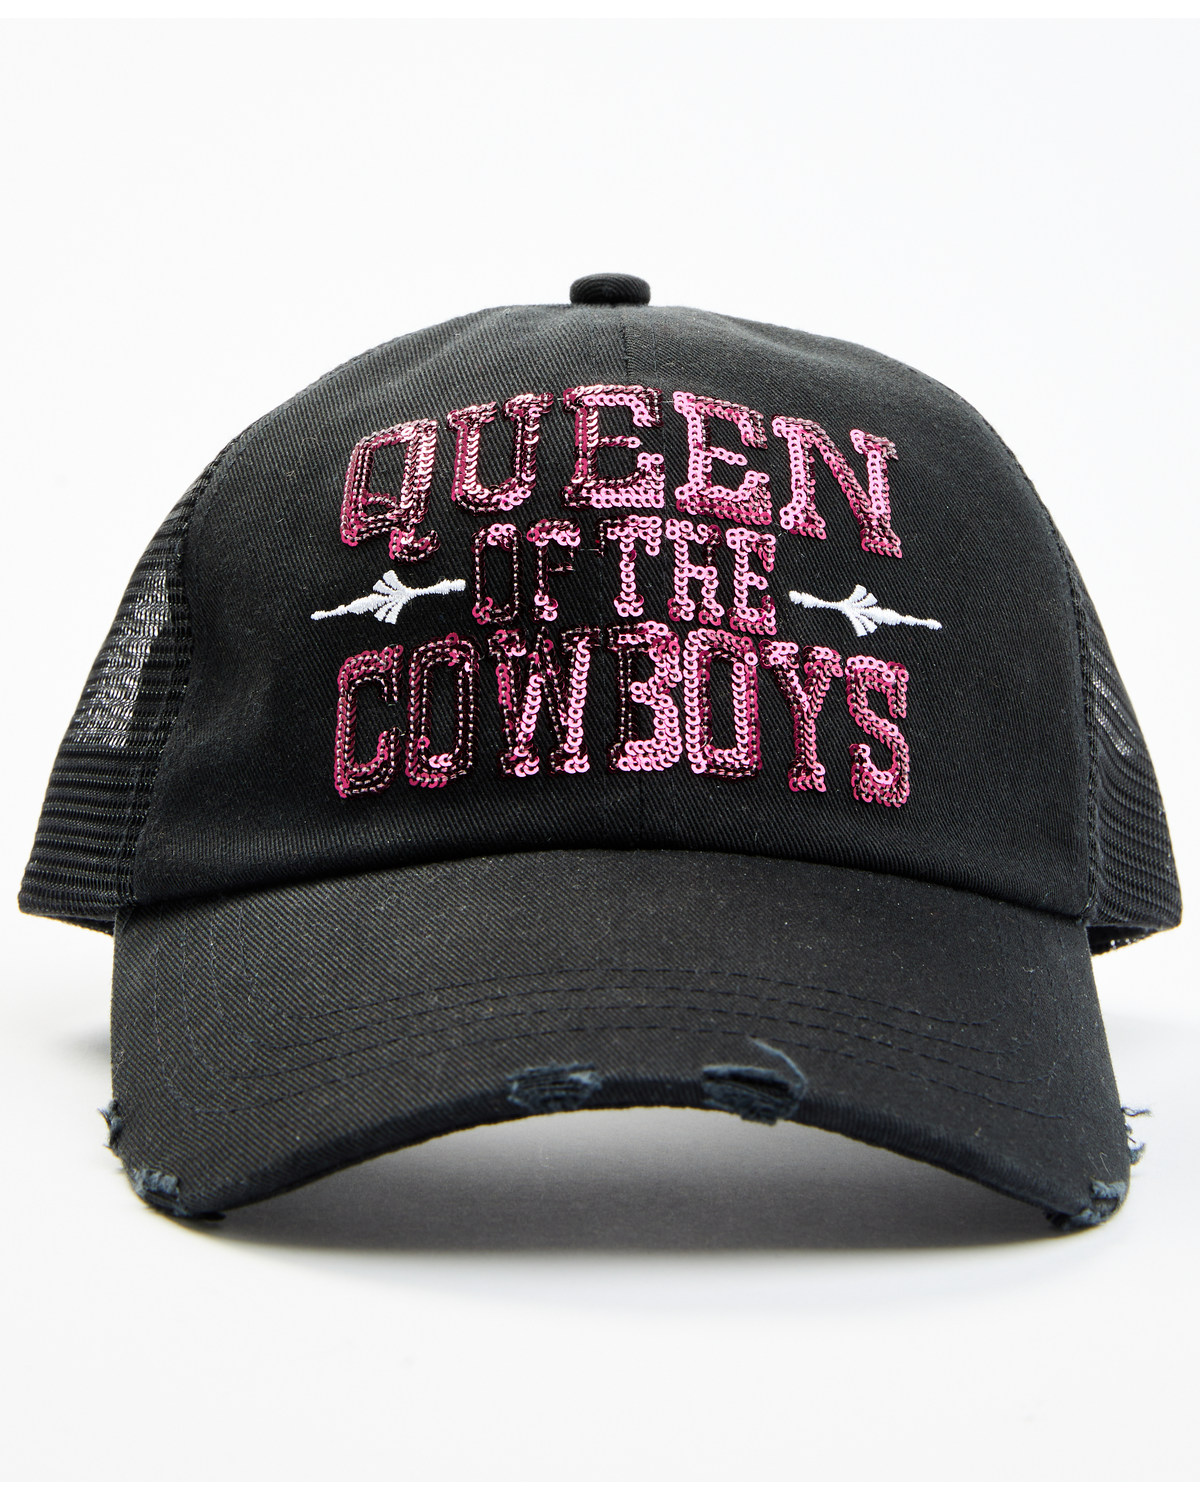 Idyllwind Women's Queen Of The Cowboys Baseball Cap